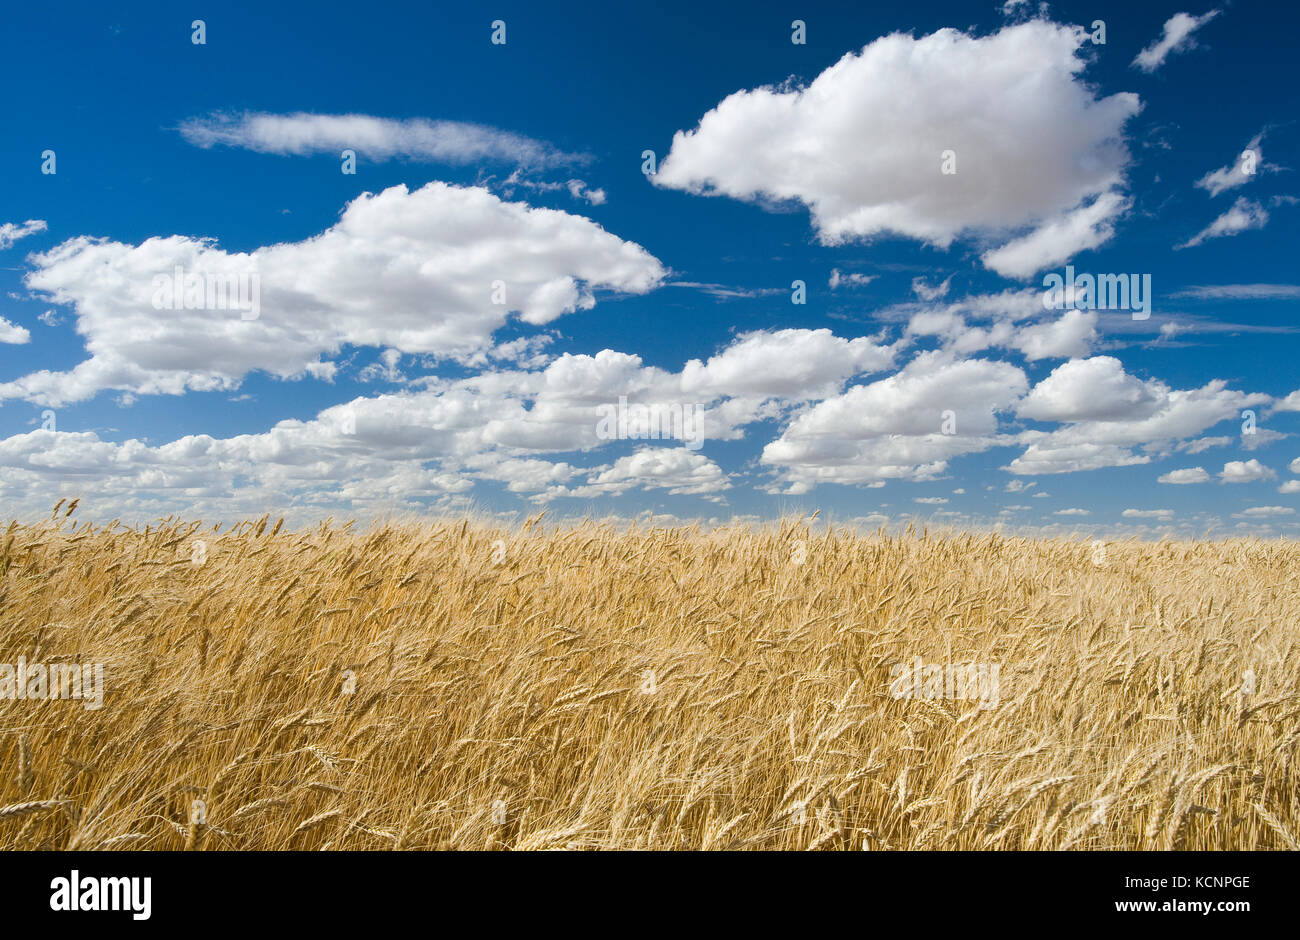 La maturité, la récolte de blé dur prêt champ de blé, près de Ponteix, Saskatchewan, Canada Banque D'Images